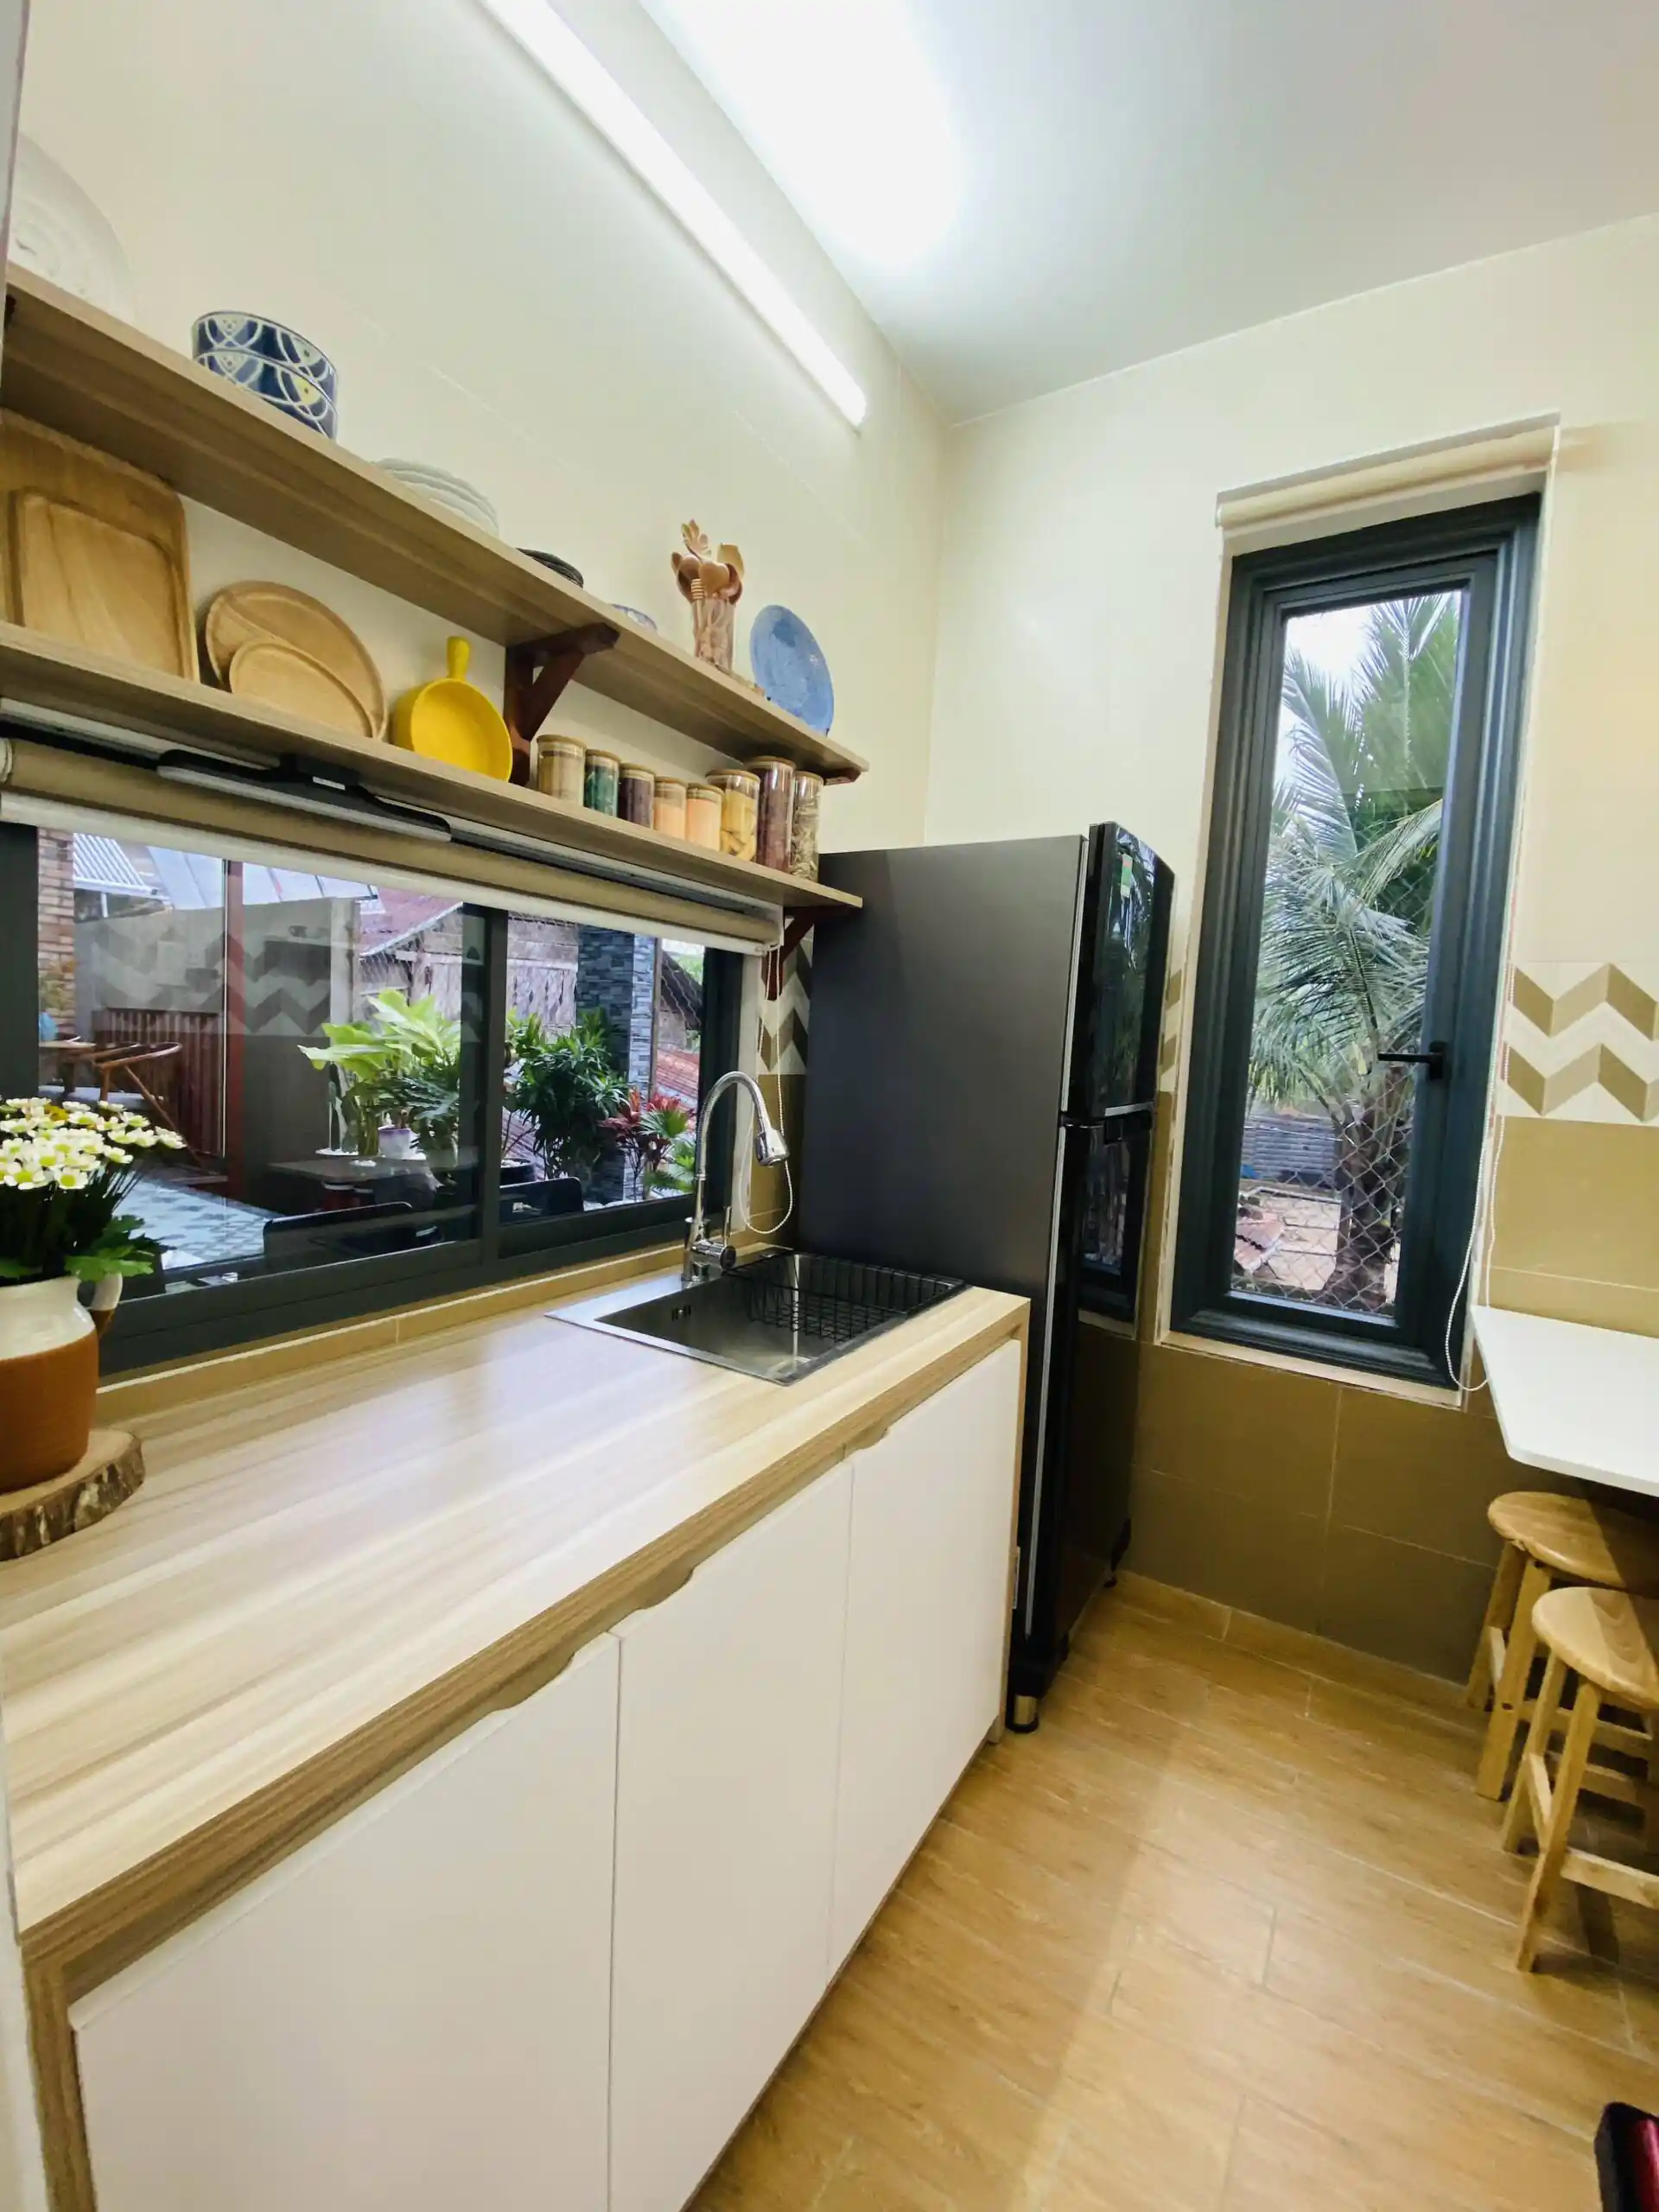 Phòng bếp có diện tích nhỏ, nên KTS ưu tiên sử dụng kệ đóng treo tường gọn gàng